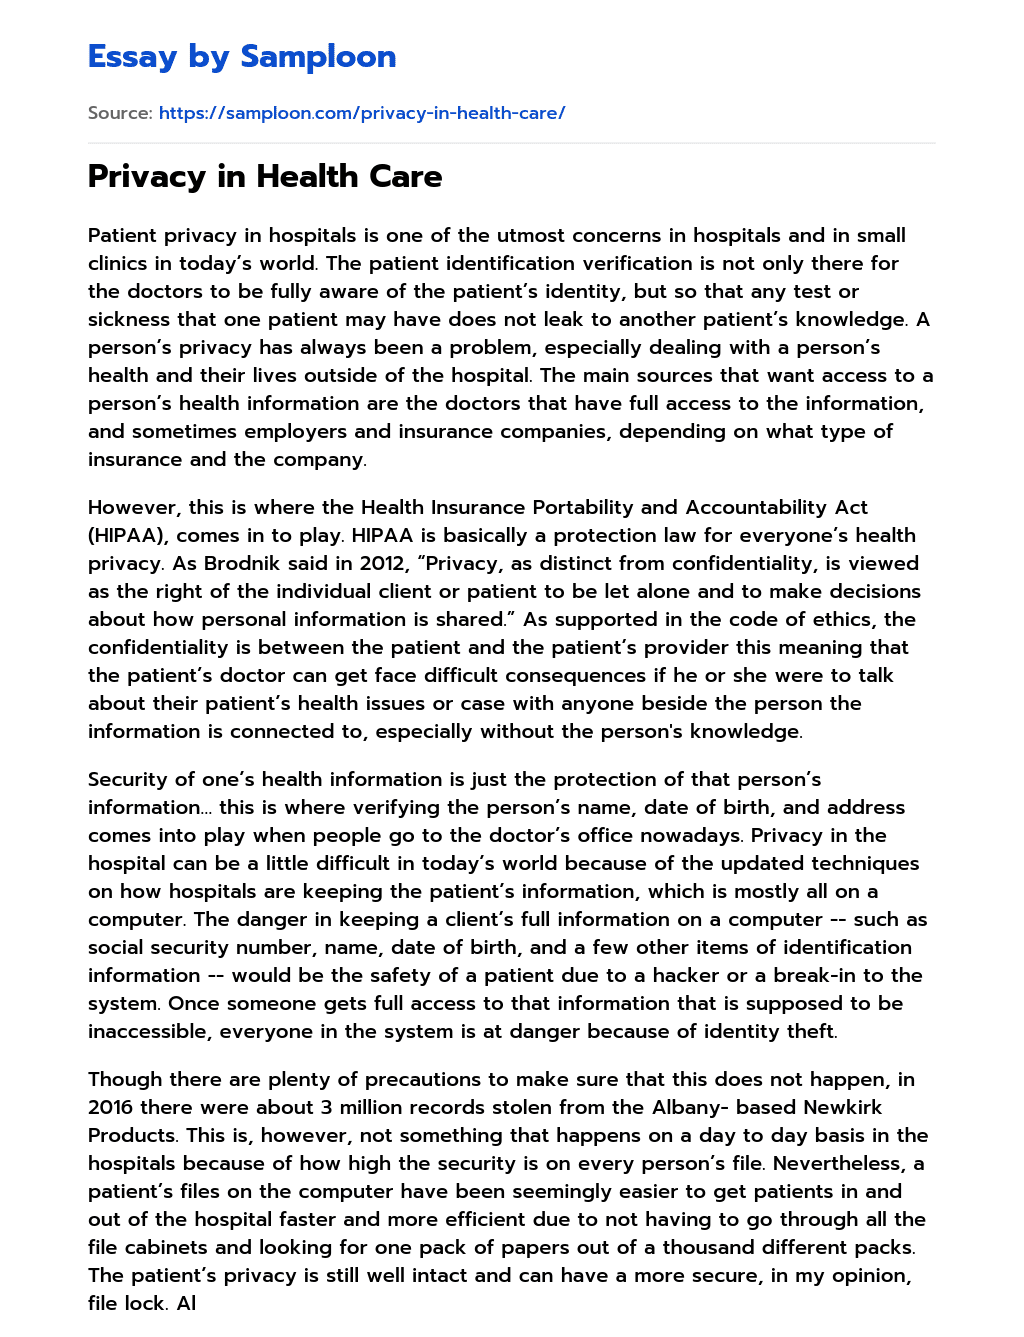 Privacy in Health Care essay